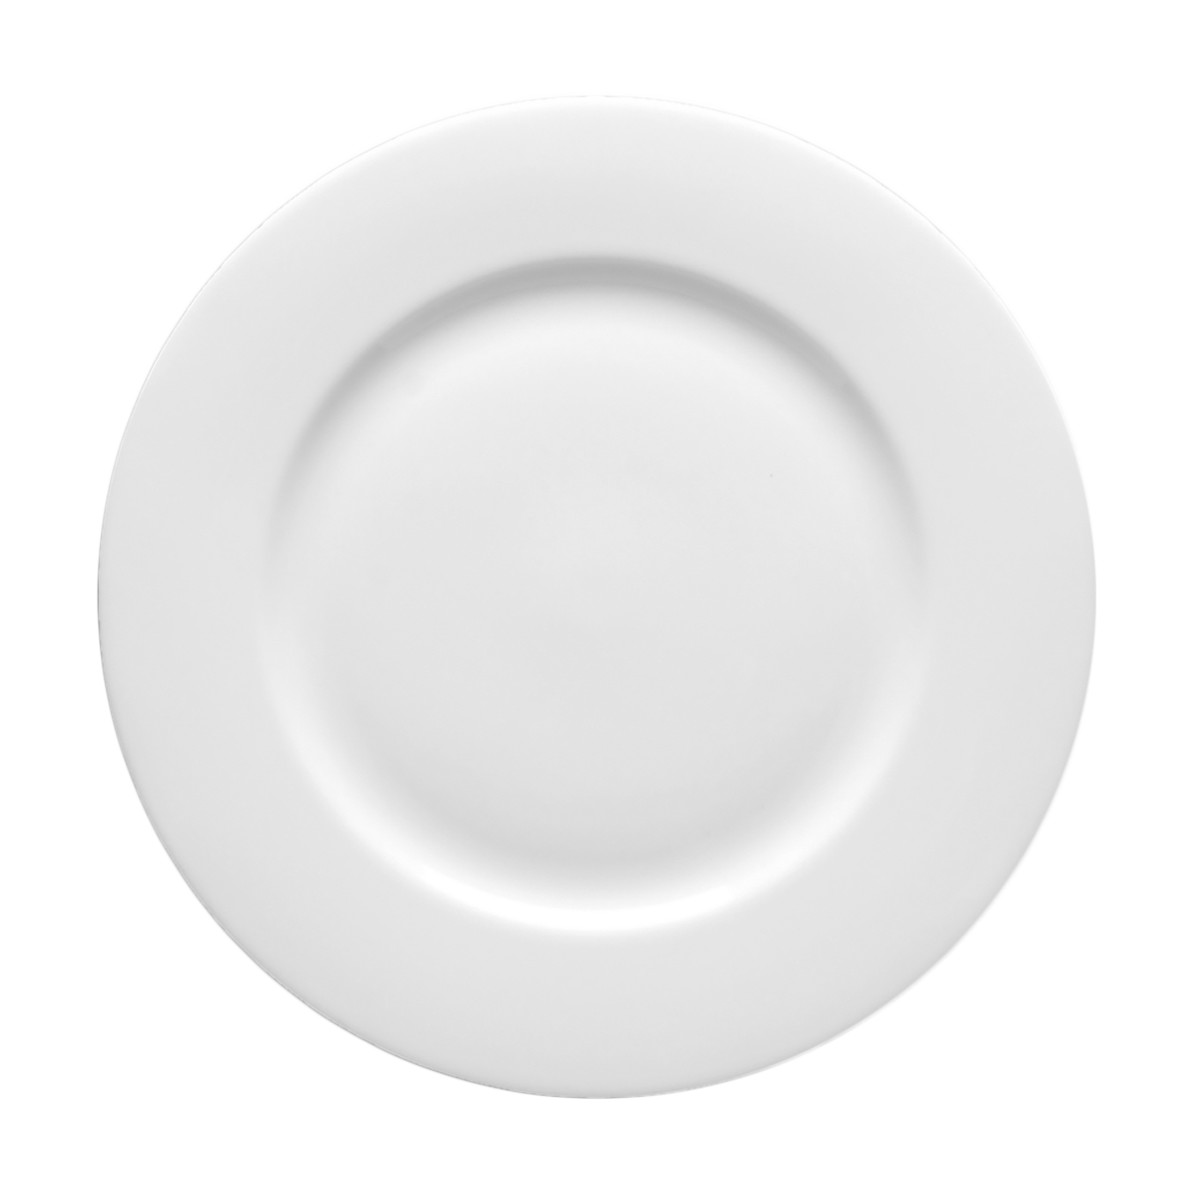 Taura Dinner Plate 10.75"